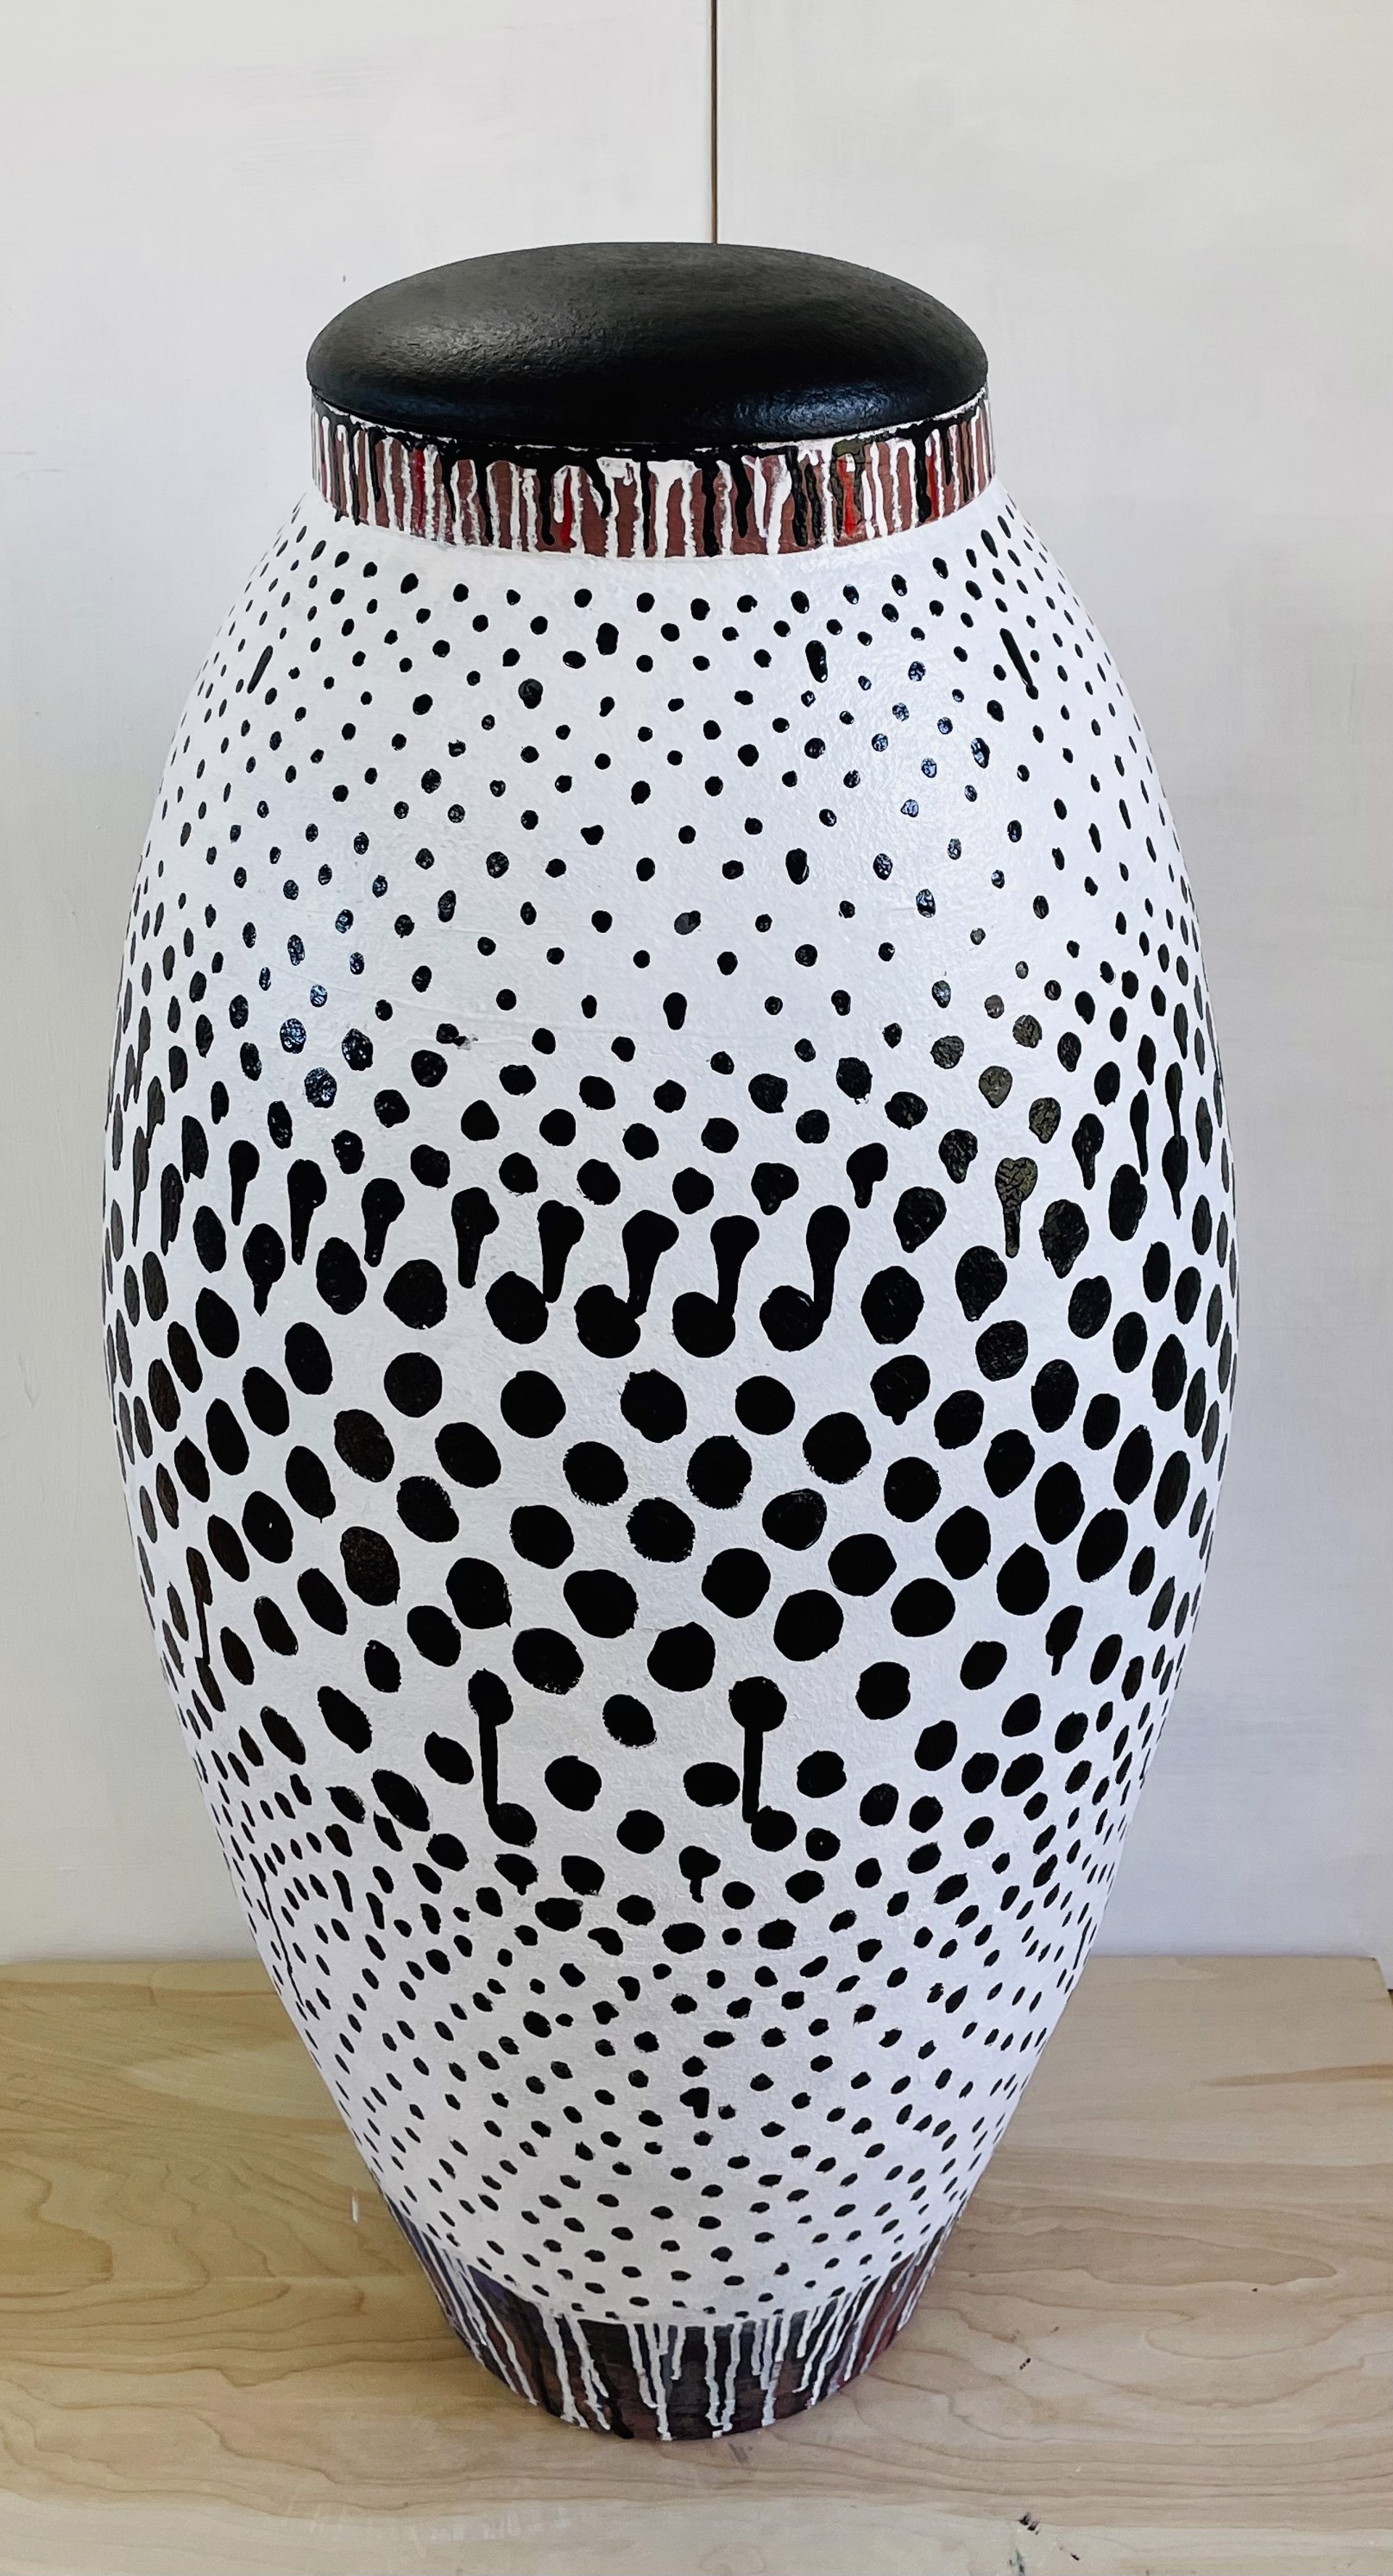 Untitled (by Jane Dahmen and Stephen Proctor, Ceramicist) by Jane Dahmen